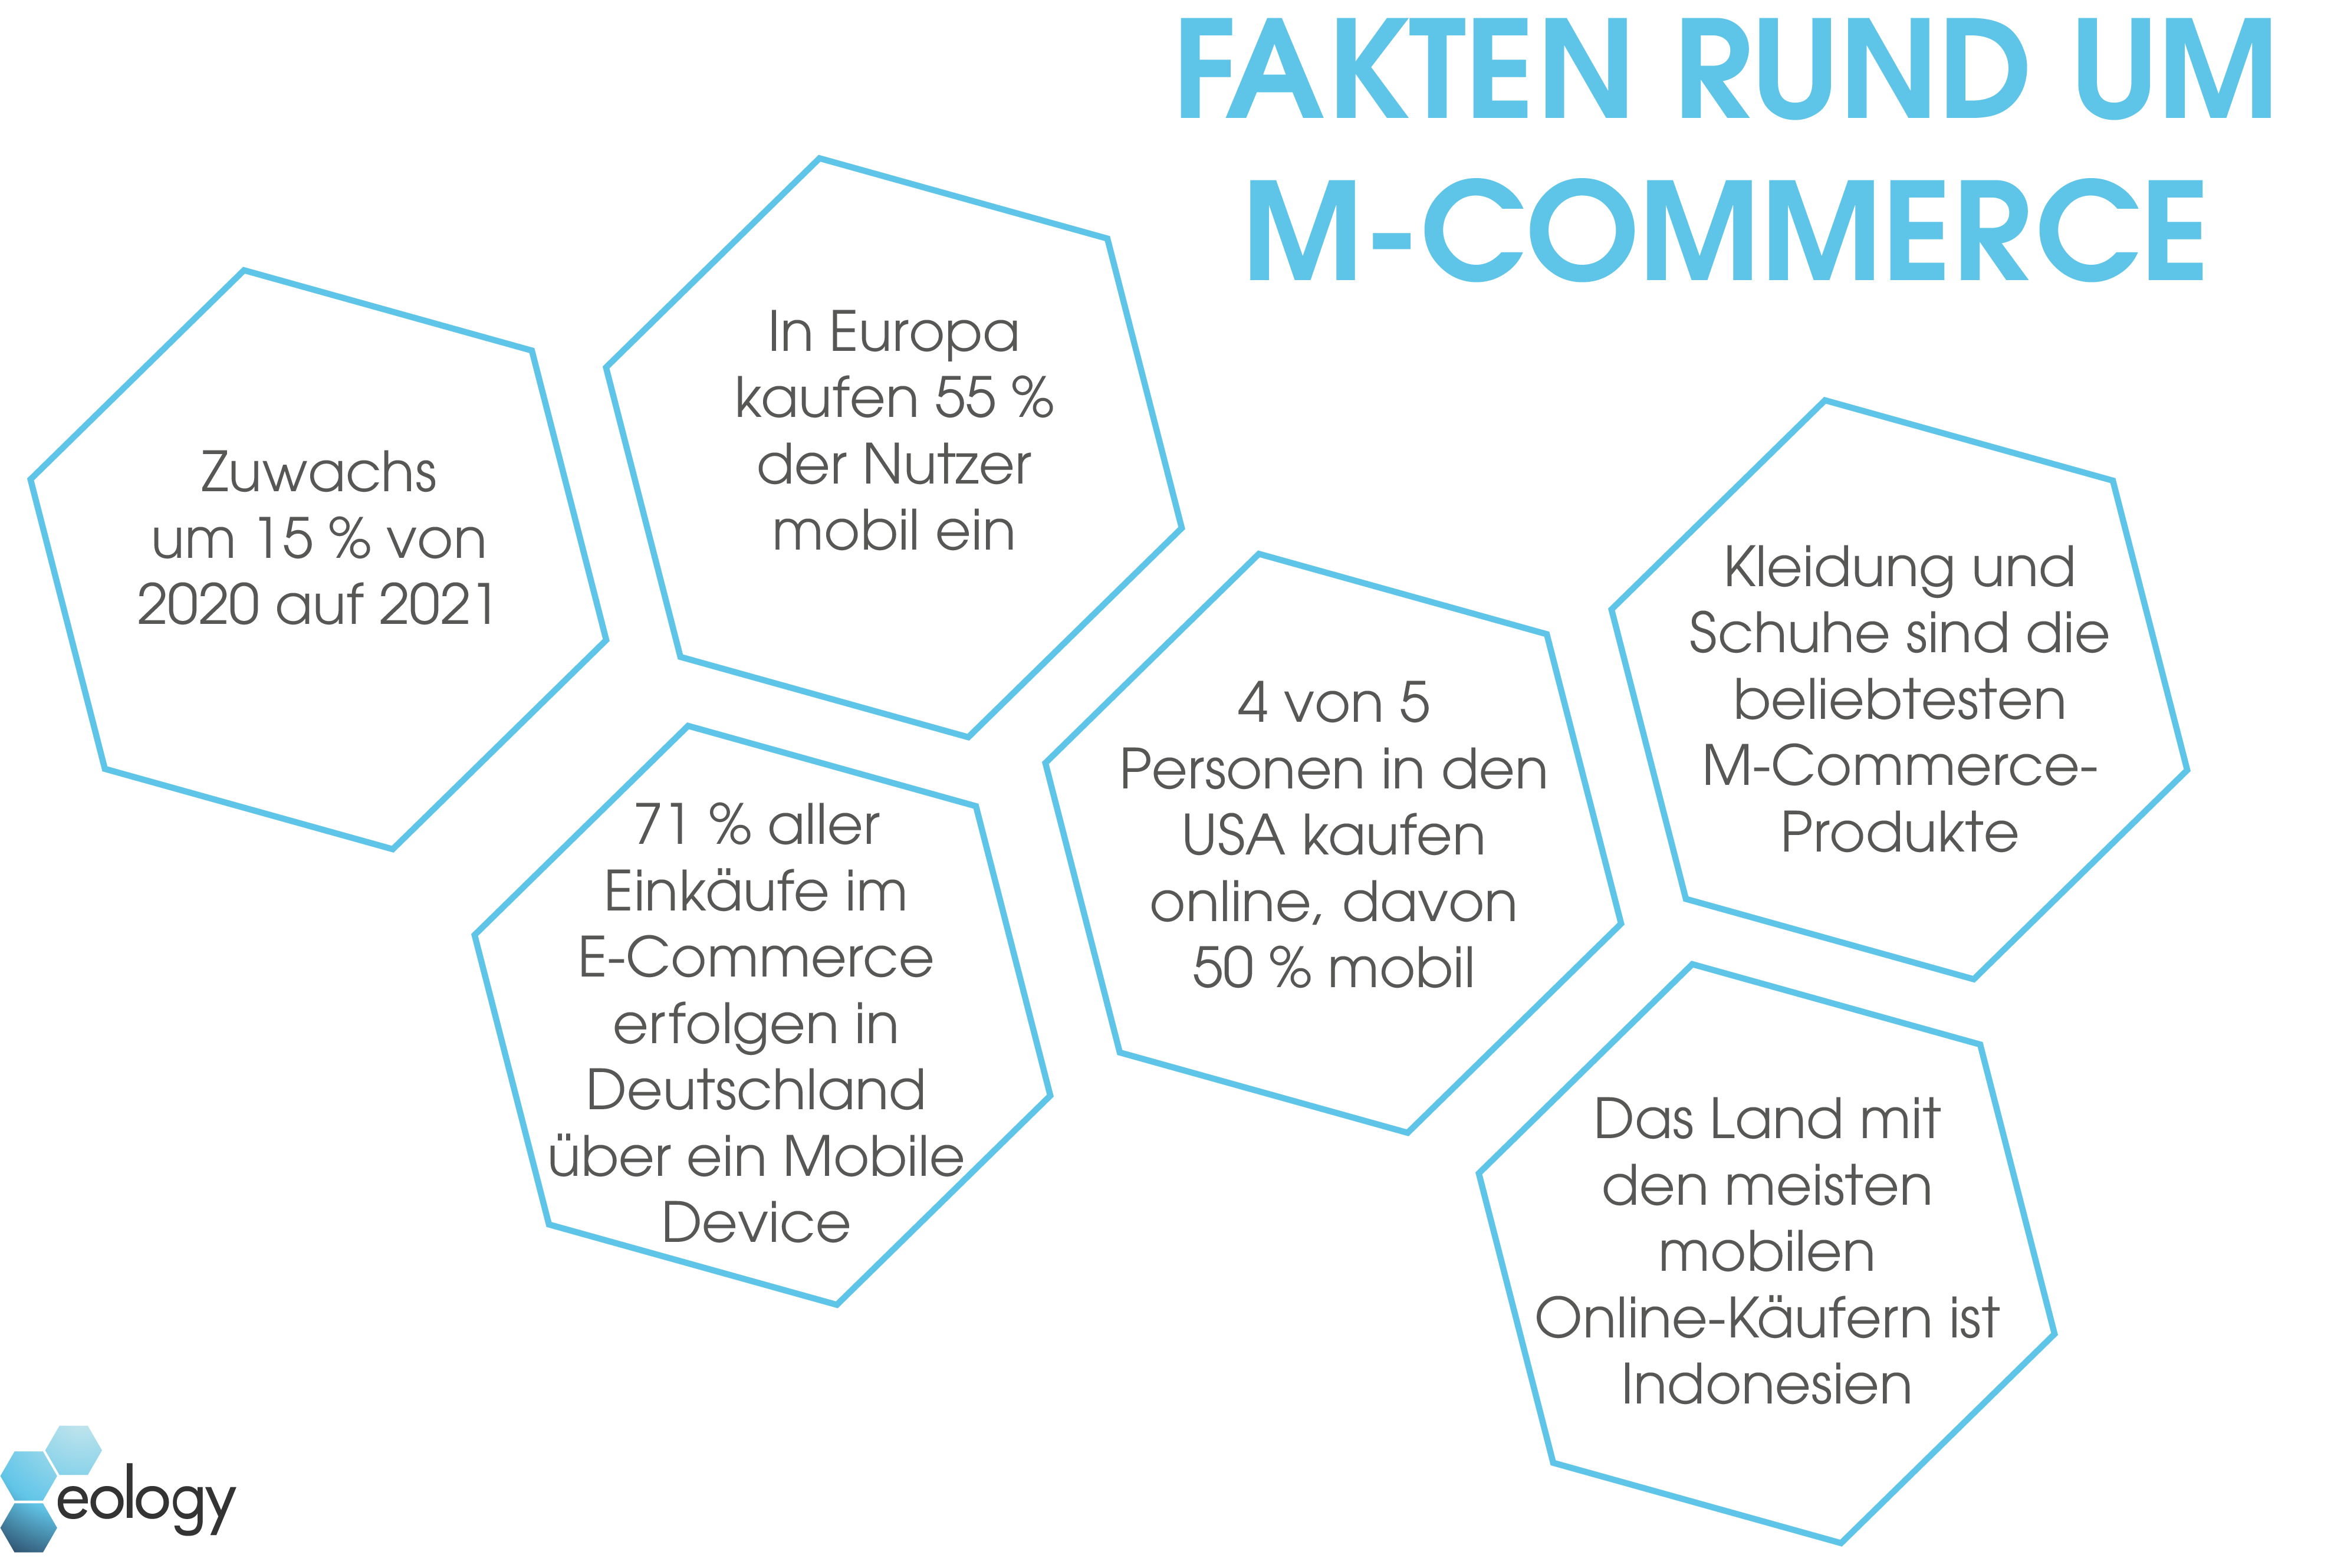 Das Bild zeigt eine Grafik, die sechs Fakten rund um M-Commerce, also mobiles E-Commerce, darstellt. Diese Fakten sind:
1. Zuwachs um 15% von 2020 auf 2021
2. In Europa kaufen 55 % der Nutzer mobil ein
3. 71% aller Einkäufe im E-Commerce erfolgen in Deutschland über ein Mobile Device
4. Vier von fünf Personen in den USA kaufen online, davon 50% mobil
5. Kleidung und Schuhe sind die beliebtesten M-Commerce-Produkte
6. Das Land mit den meisten mobilen Online-Käufern ist Indonesien